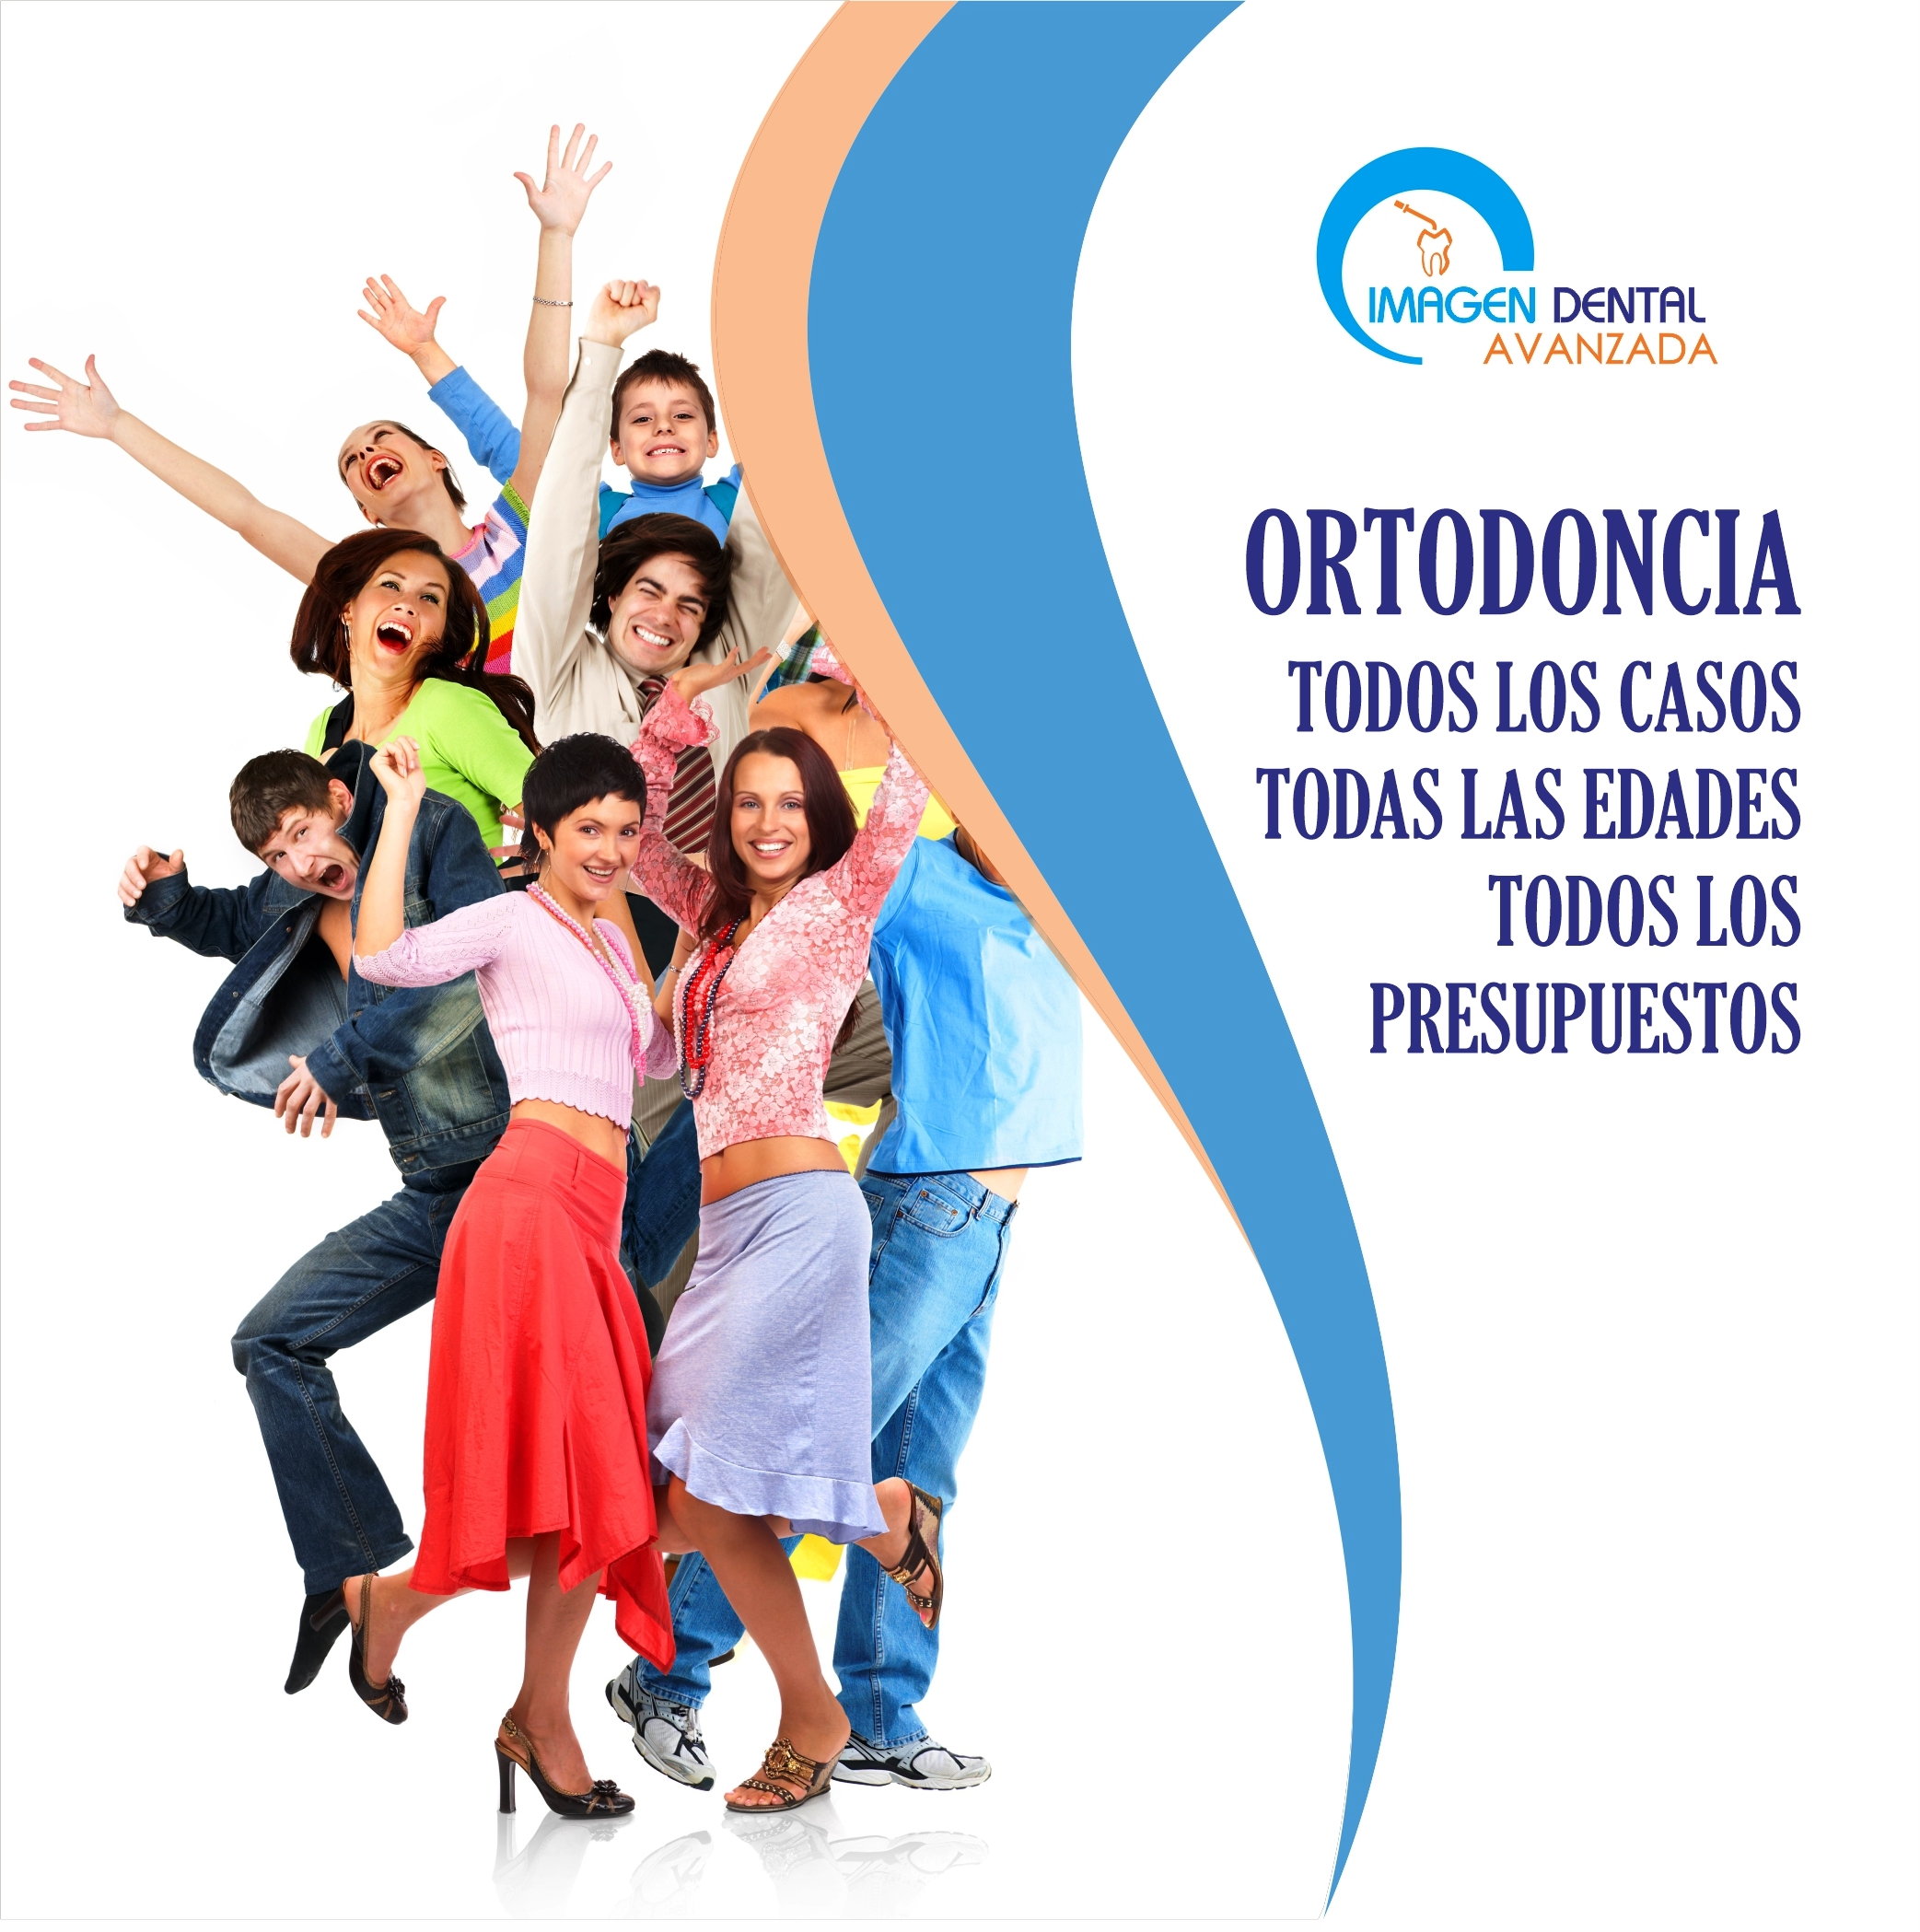 Imagen Dental Avanzada ortodoncia